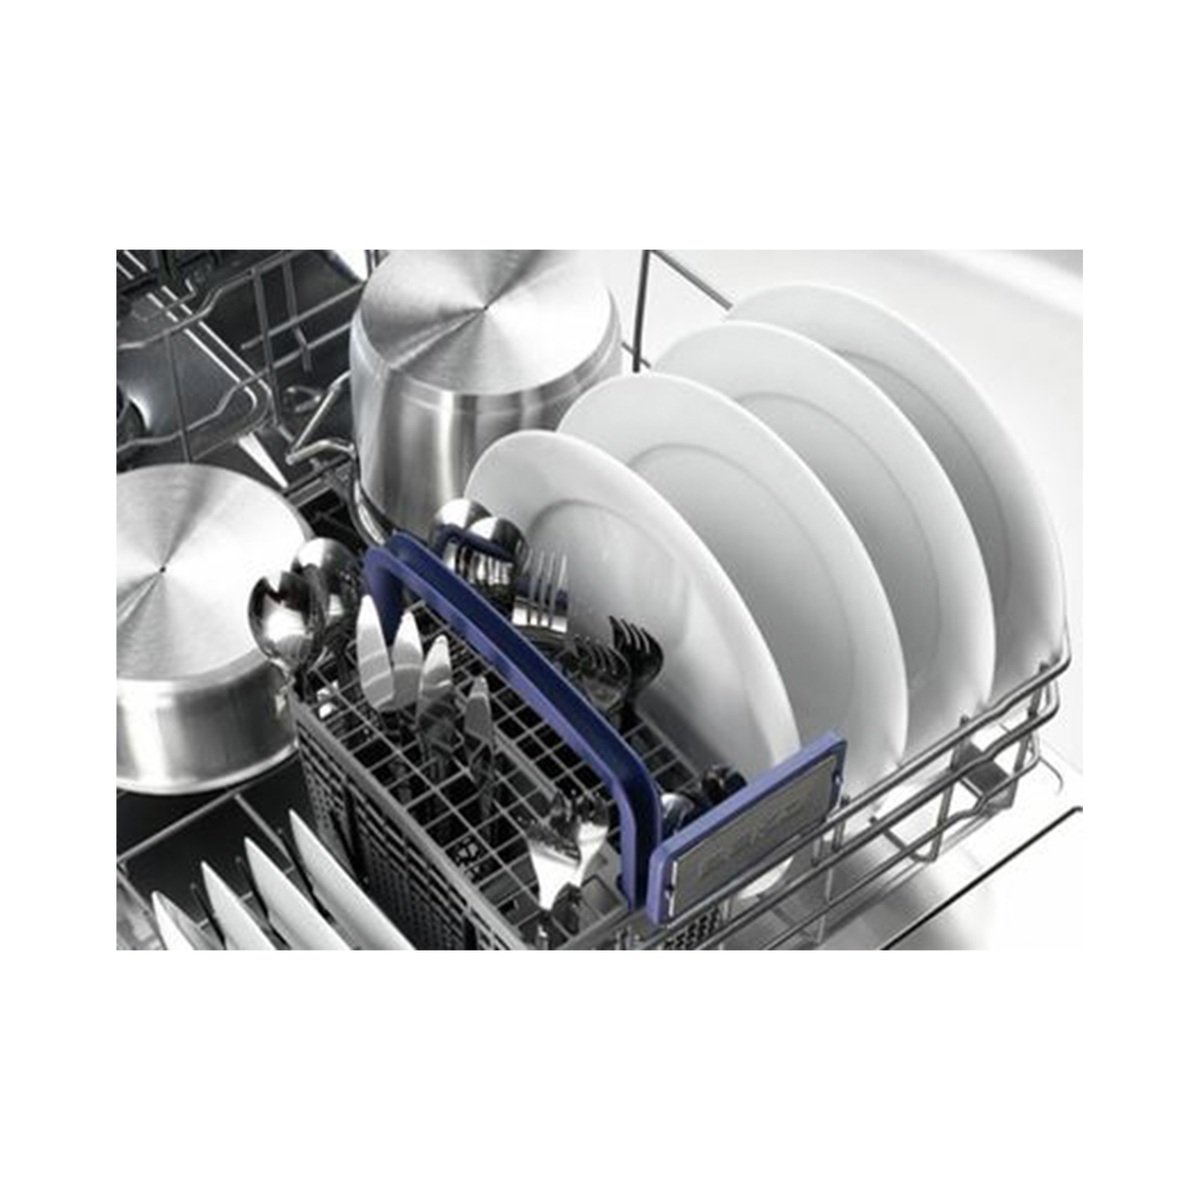 Hisense Dishwasher H13DESS 5Programs